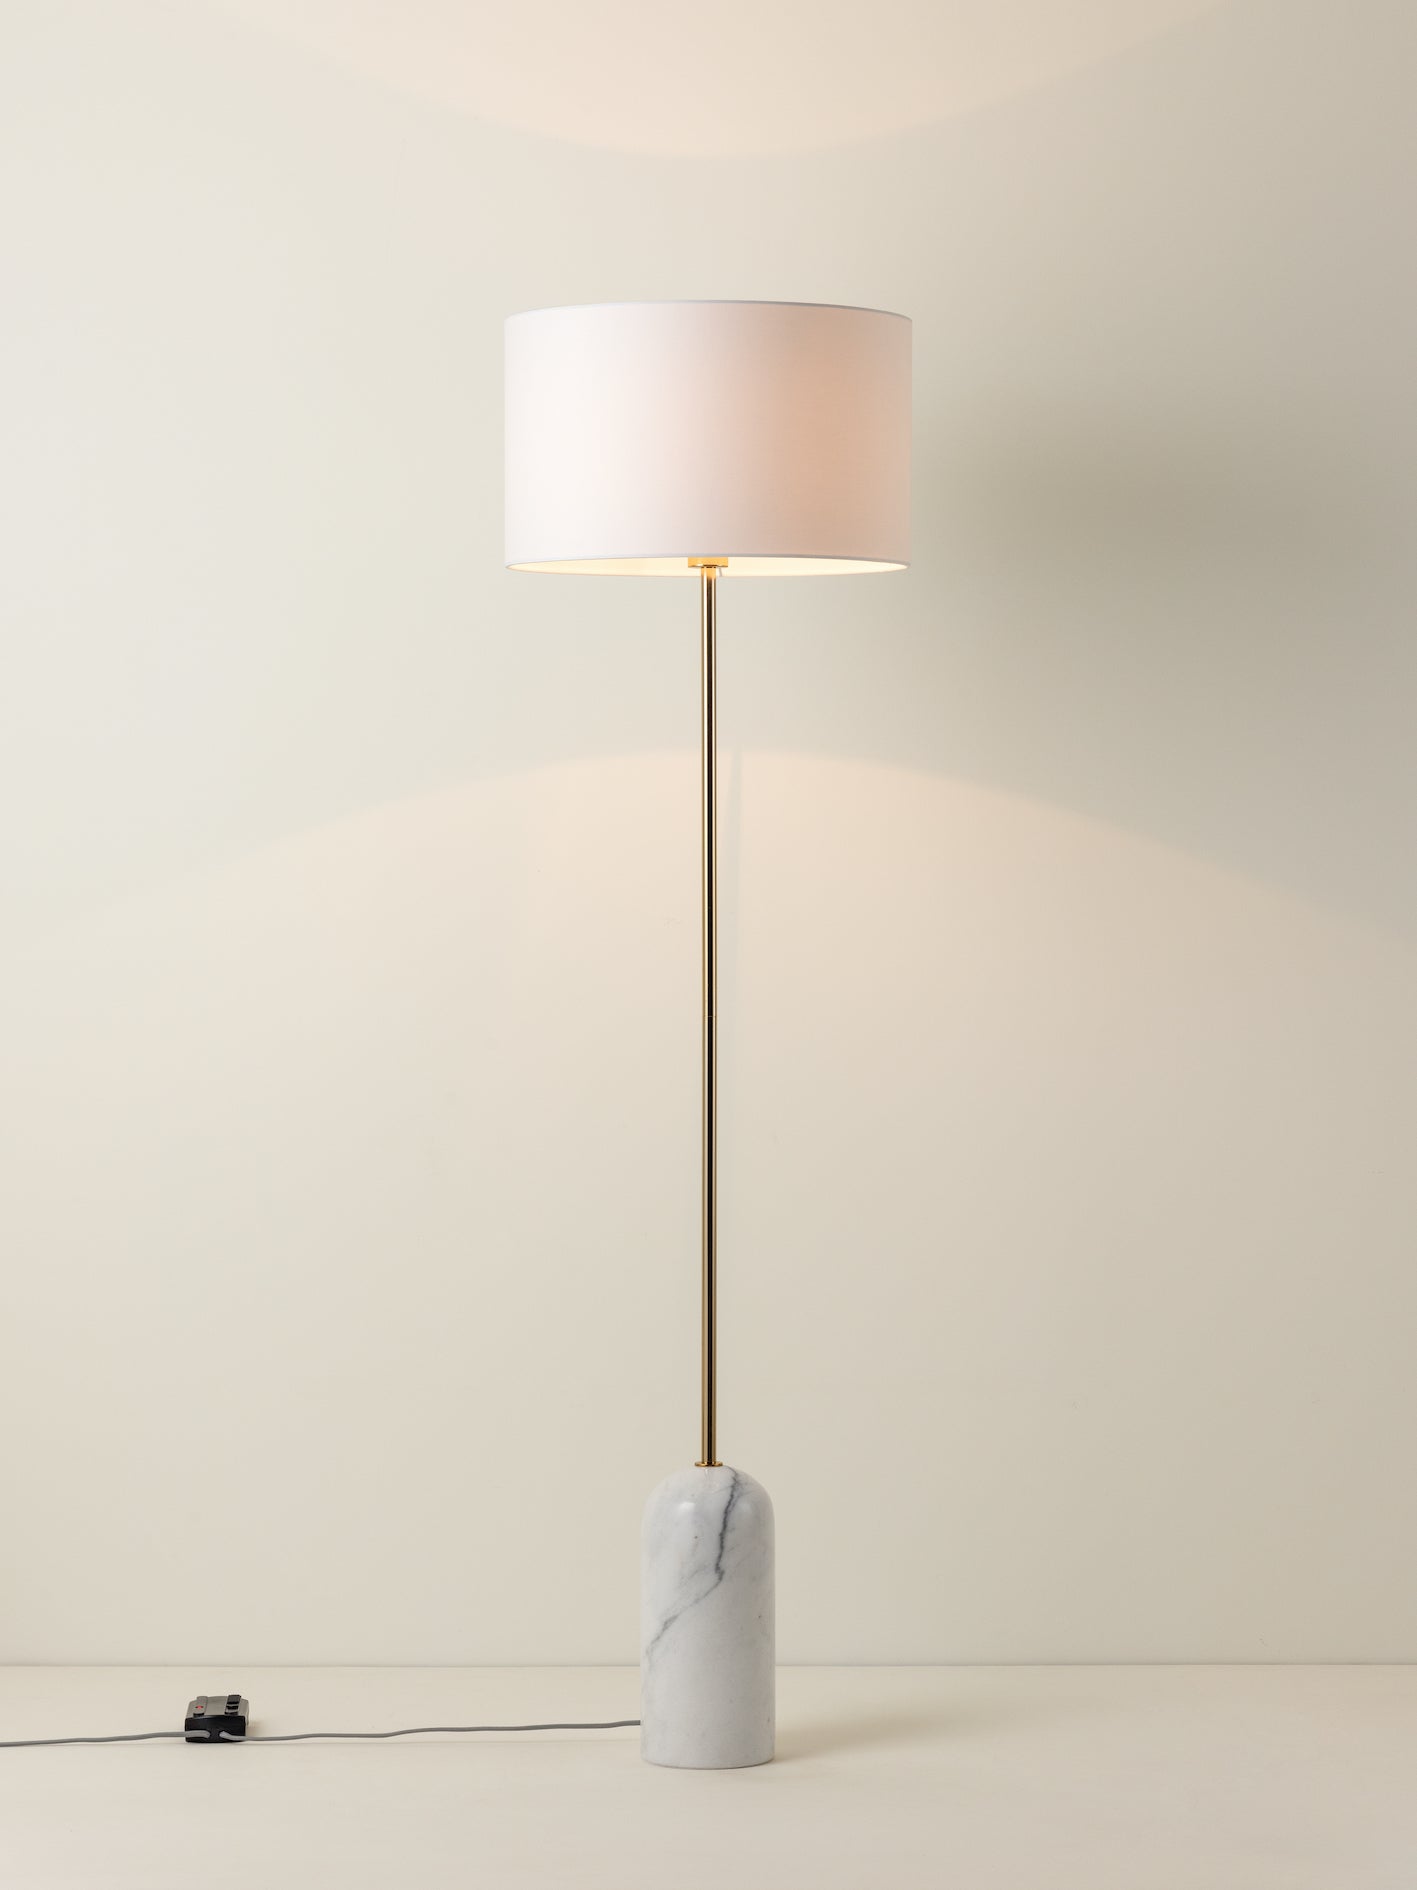 Penn - 1 light white marble and brass floor lamp | Floor Lamp | Lights & Lamps | UK | Modern Affordable Designer Lighting